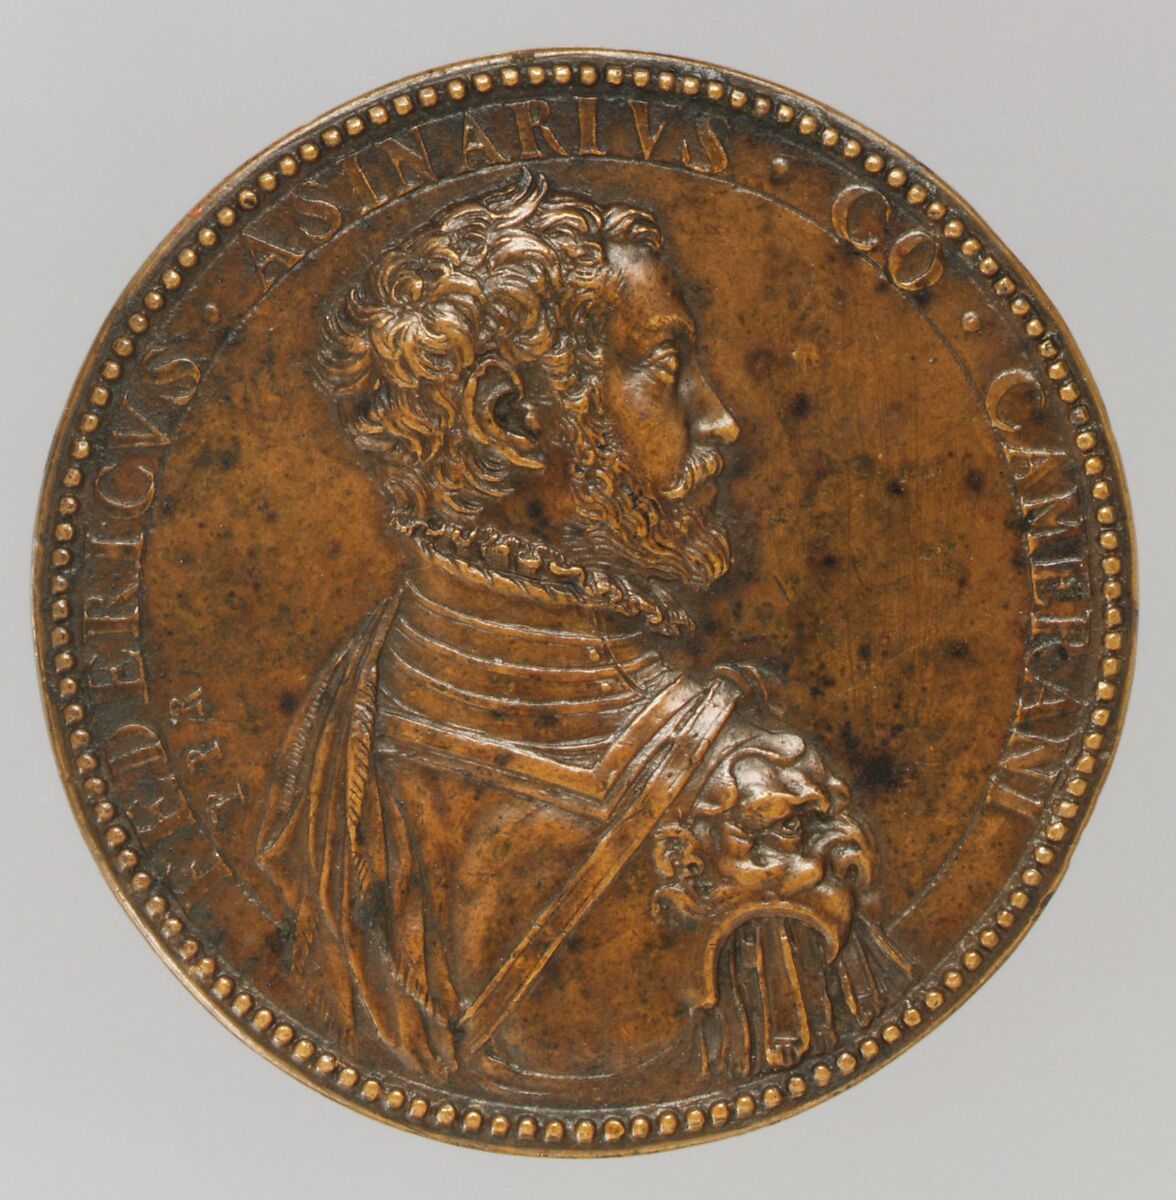 Federigo Asinari, Count of Camerano (1527–1575), Medalist: Pietro Paolo Galeotti, Bronze, brown patina, cast, Italian 